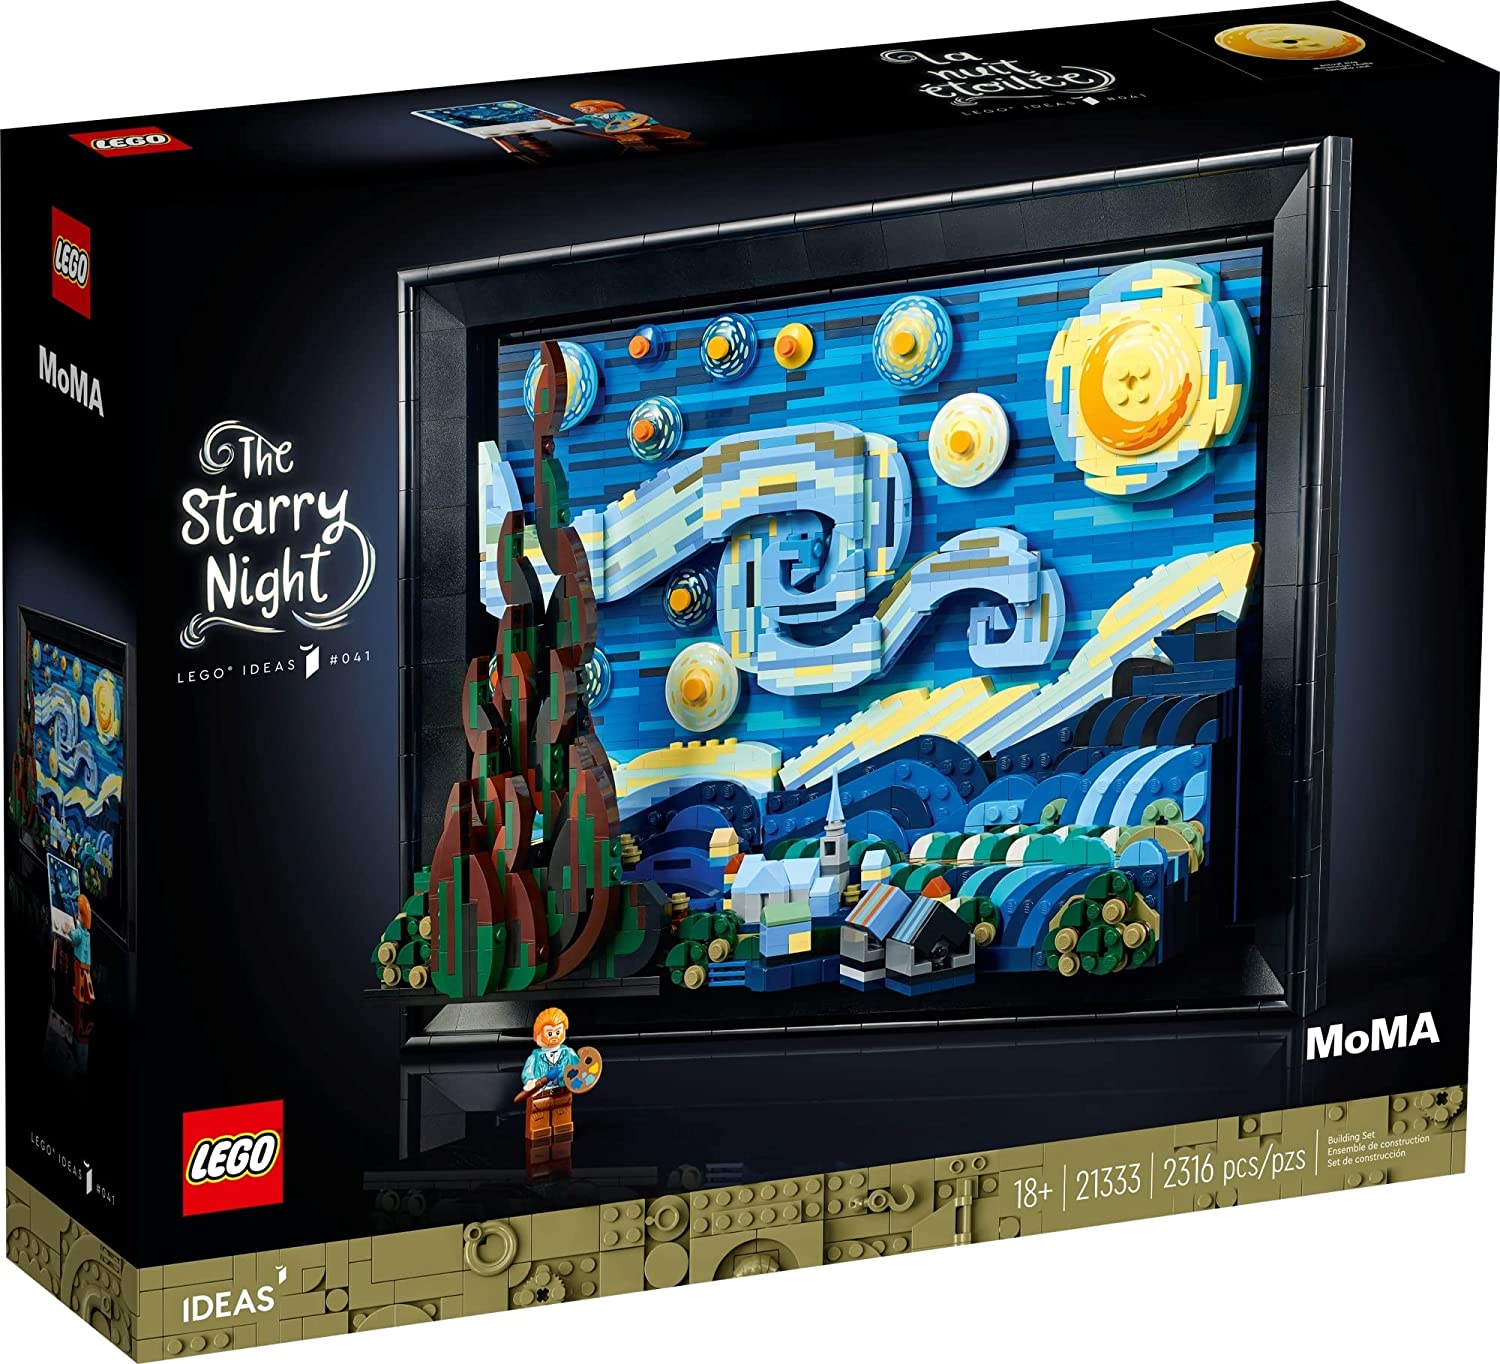 yKiEʌzS(LEGO)@21333 yzACfA@Sbz@@The Starry Night